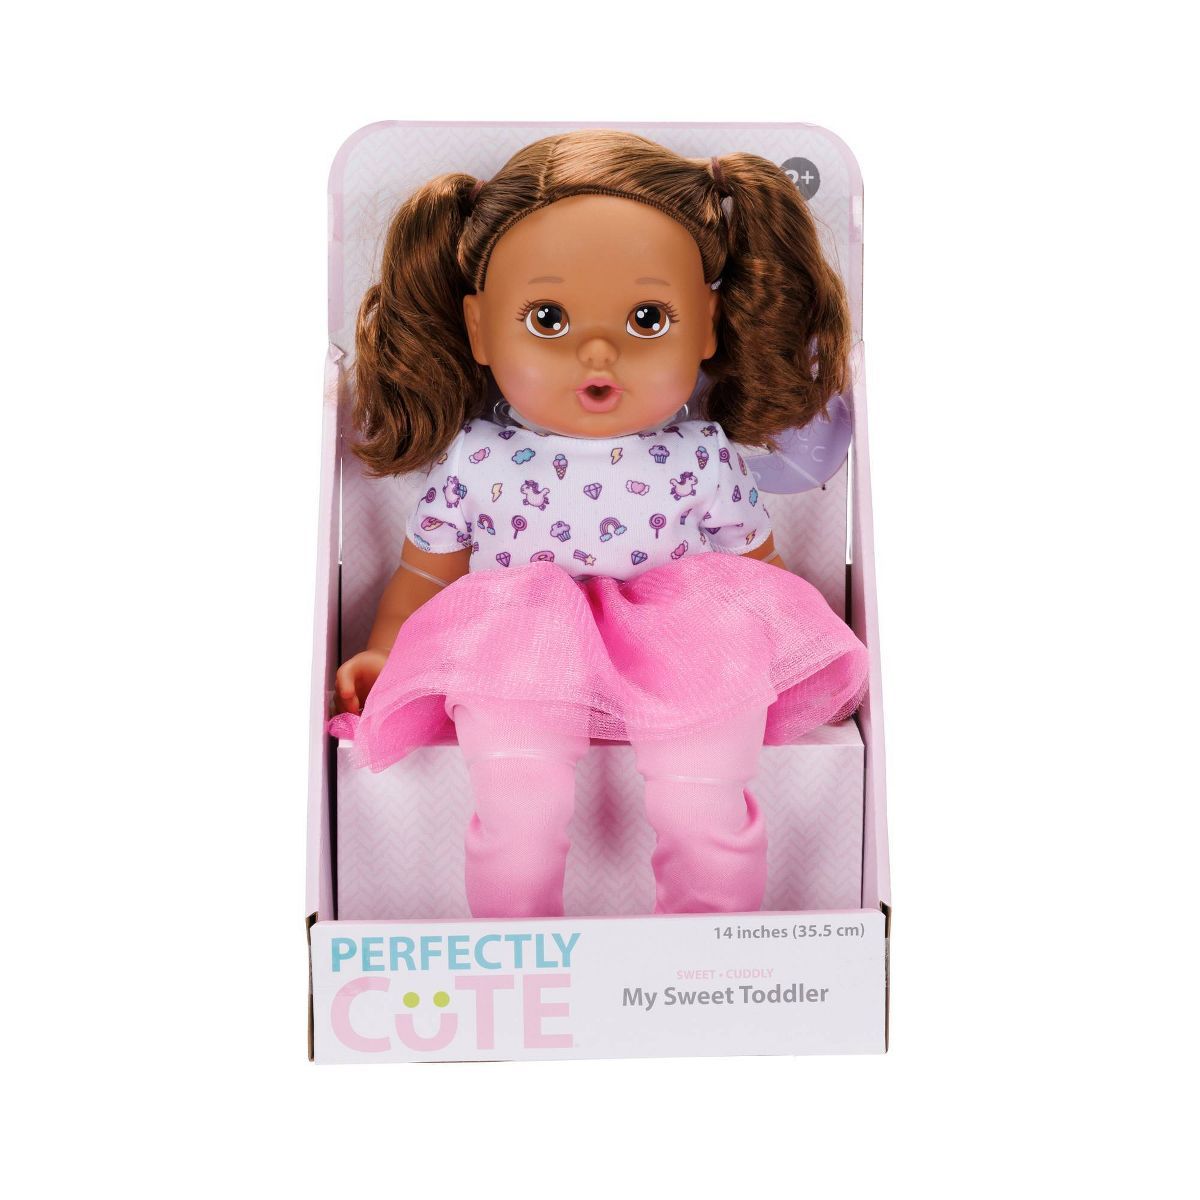 Perfectly Cute My Sweet Toddler Baby Doll - Brown Hair/Brown Eyes | Target